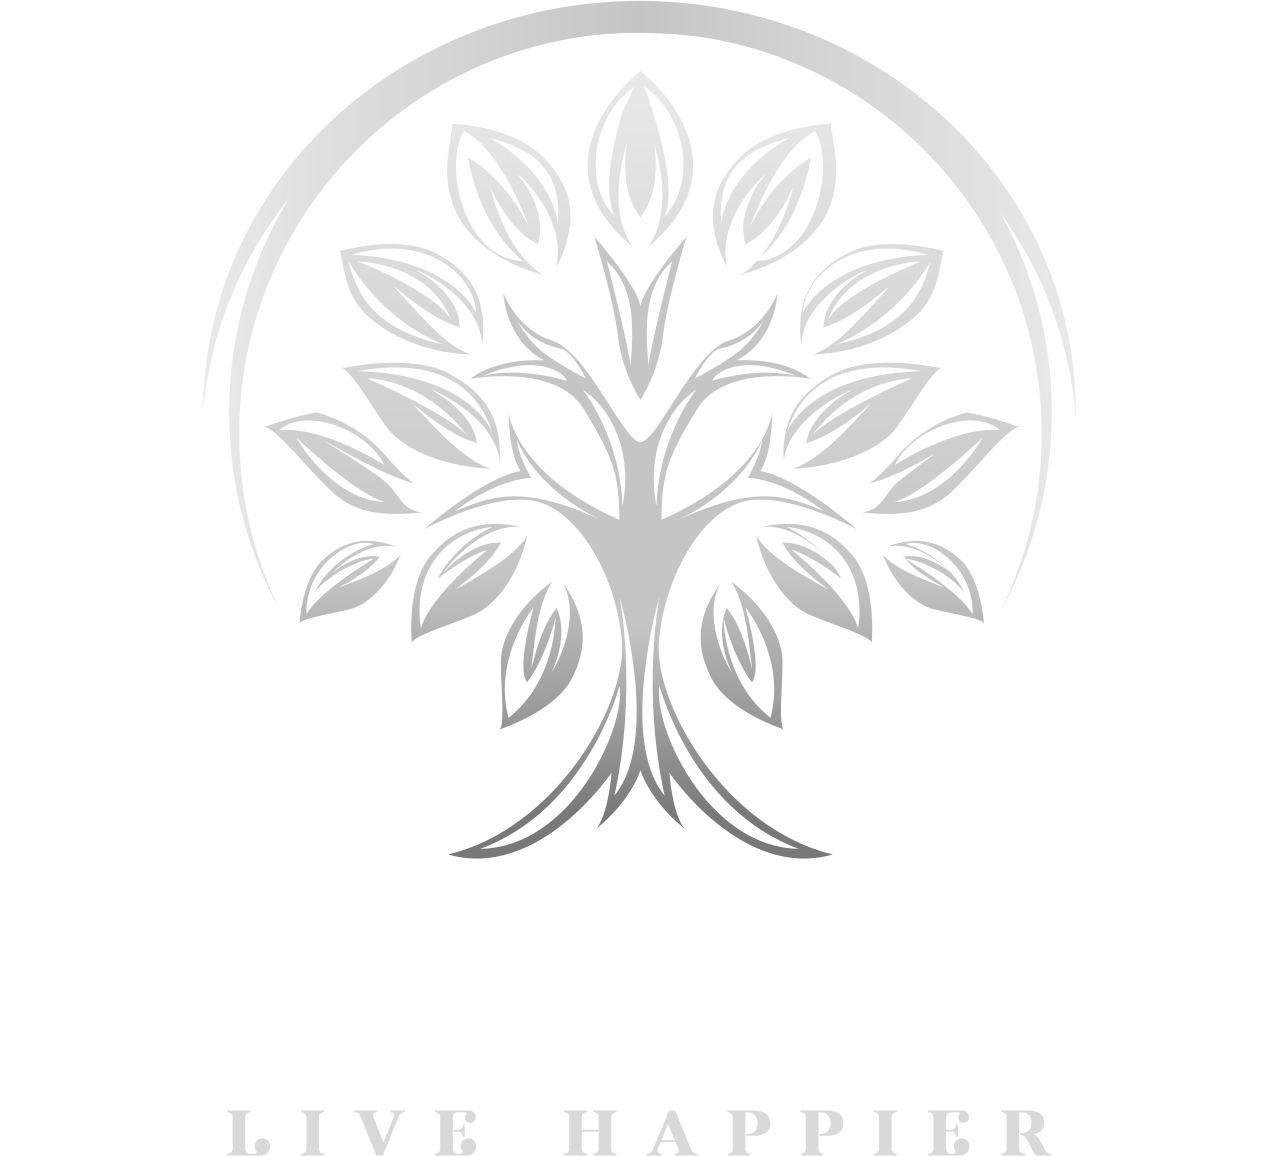 Bliss Maxx's logo